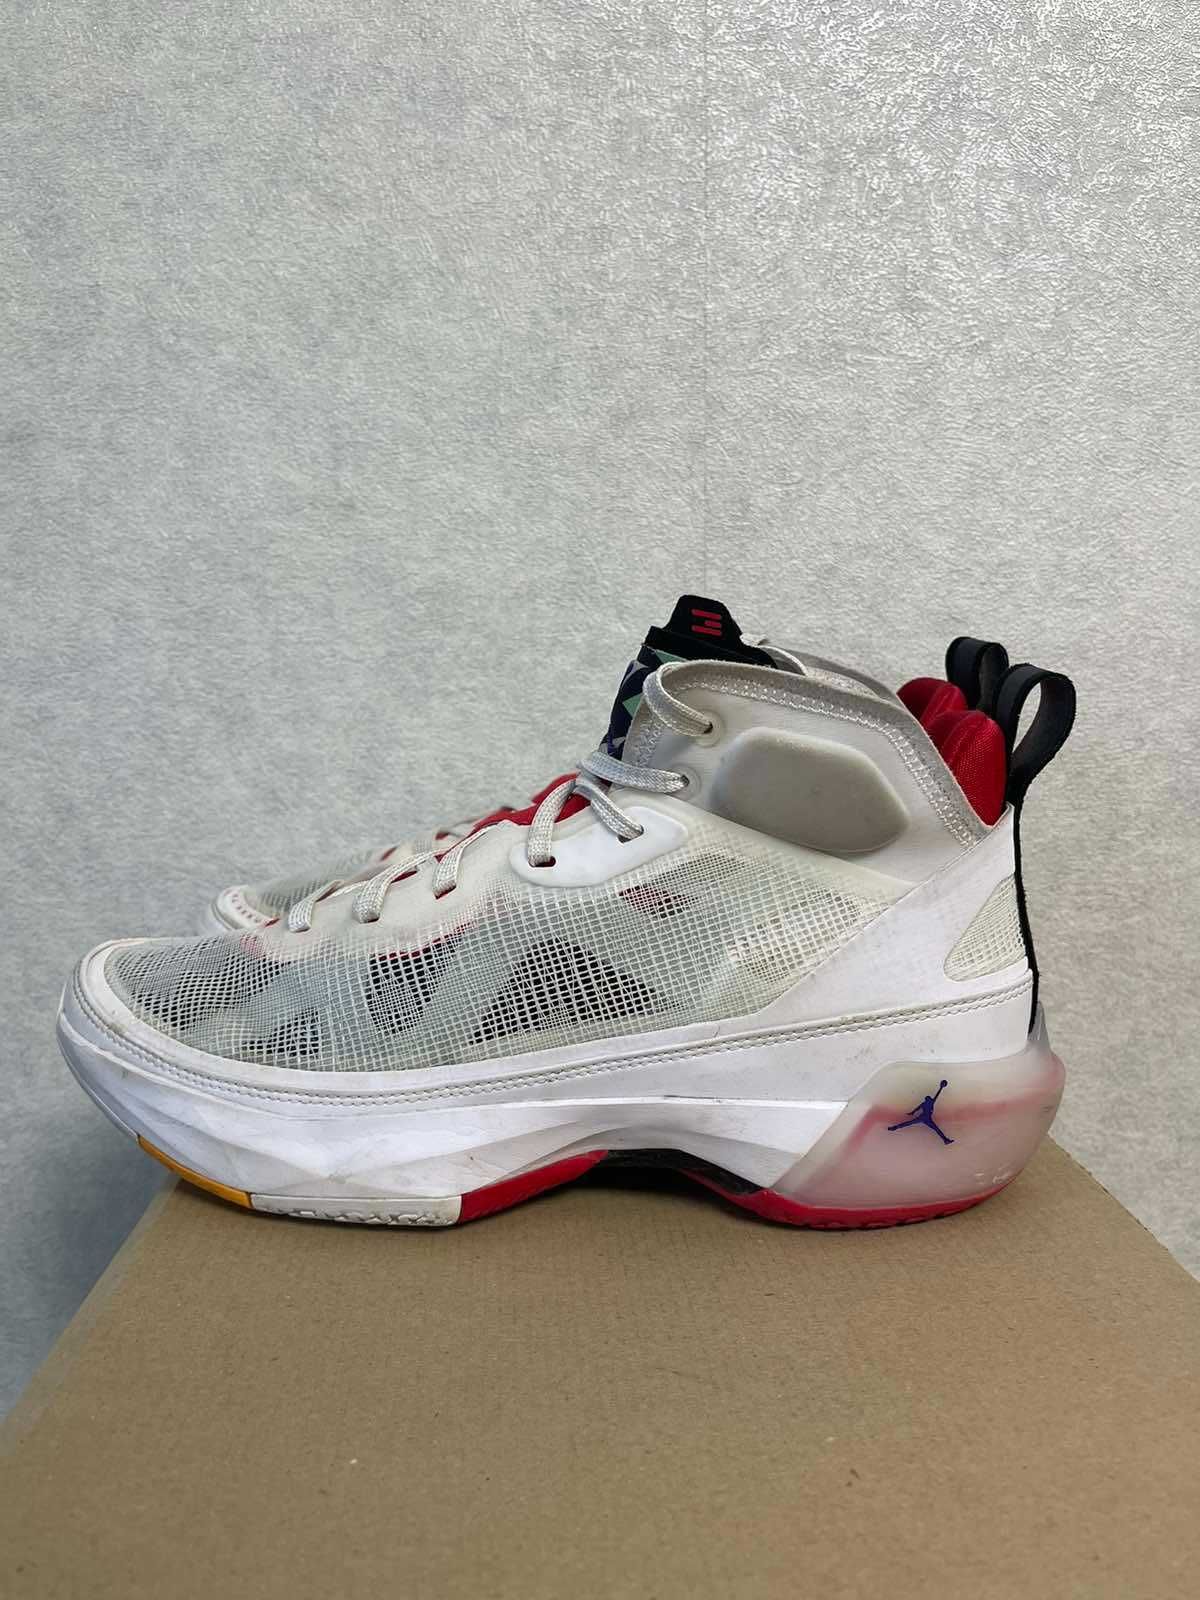 Nike Air Jordan XVII [US 9.5 |27.5 cm]